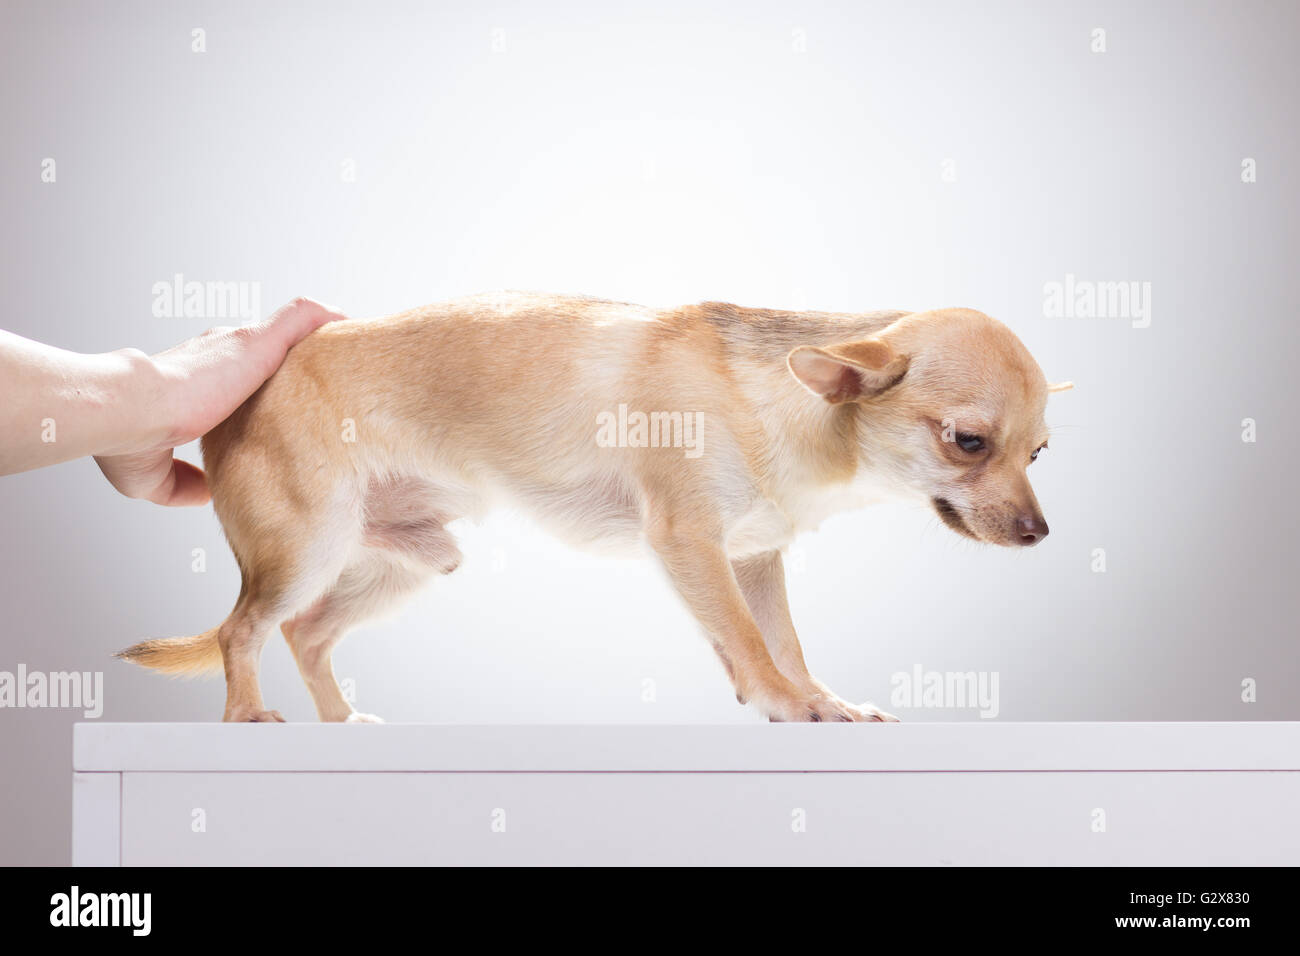 Triste, deprimido, Chihuahua perro empujado por la mano. Foto de stock